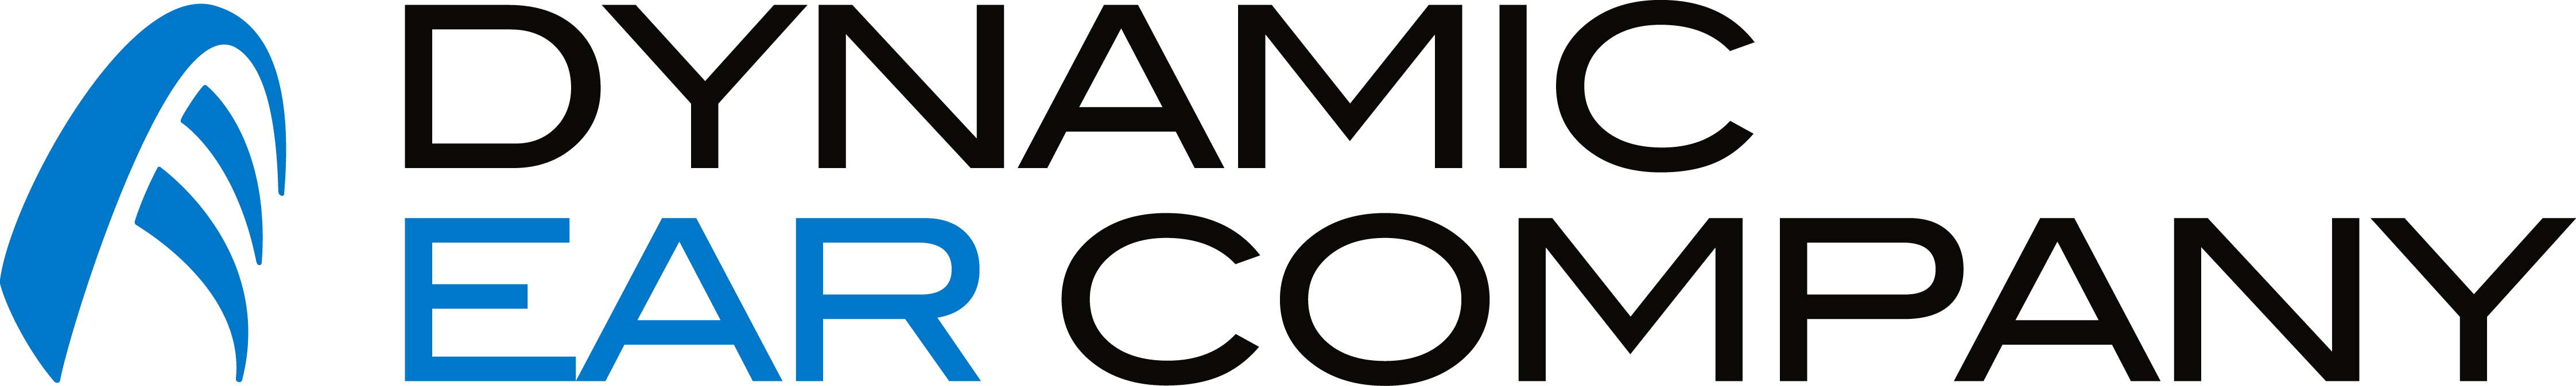 Dec - Dynamic Ear Company Logo (4488x673)